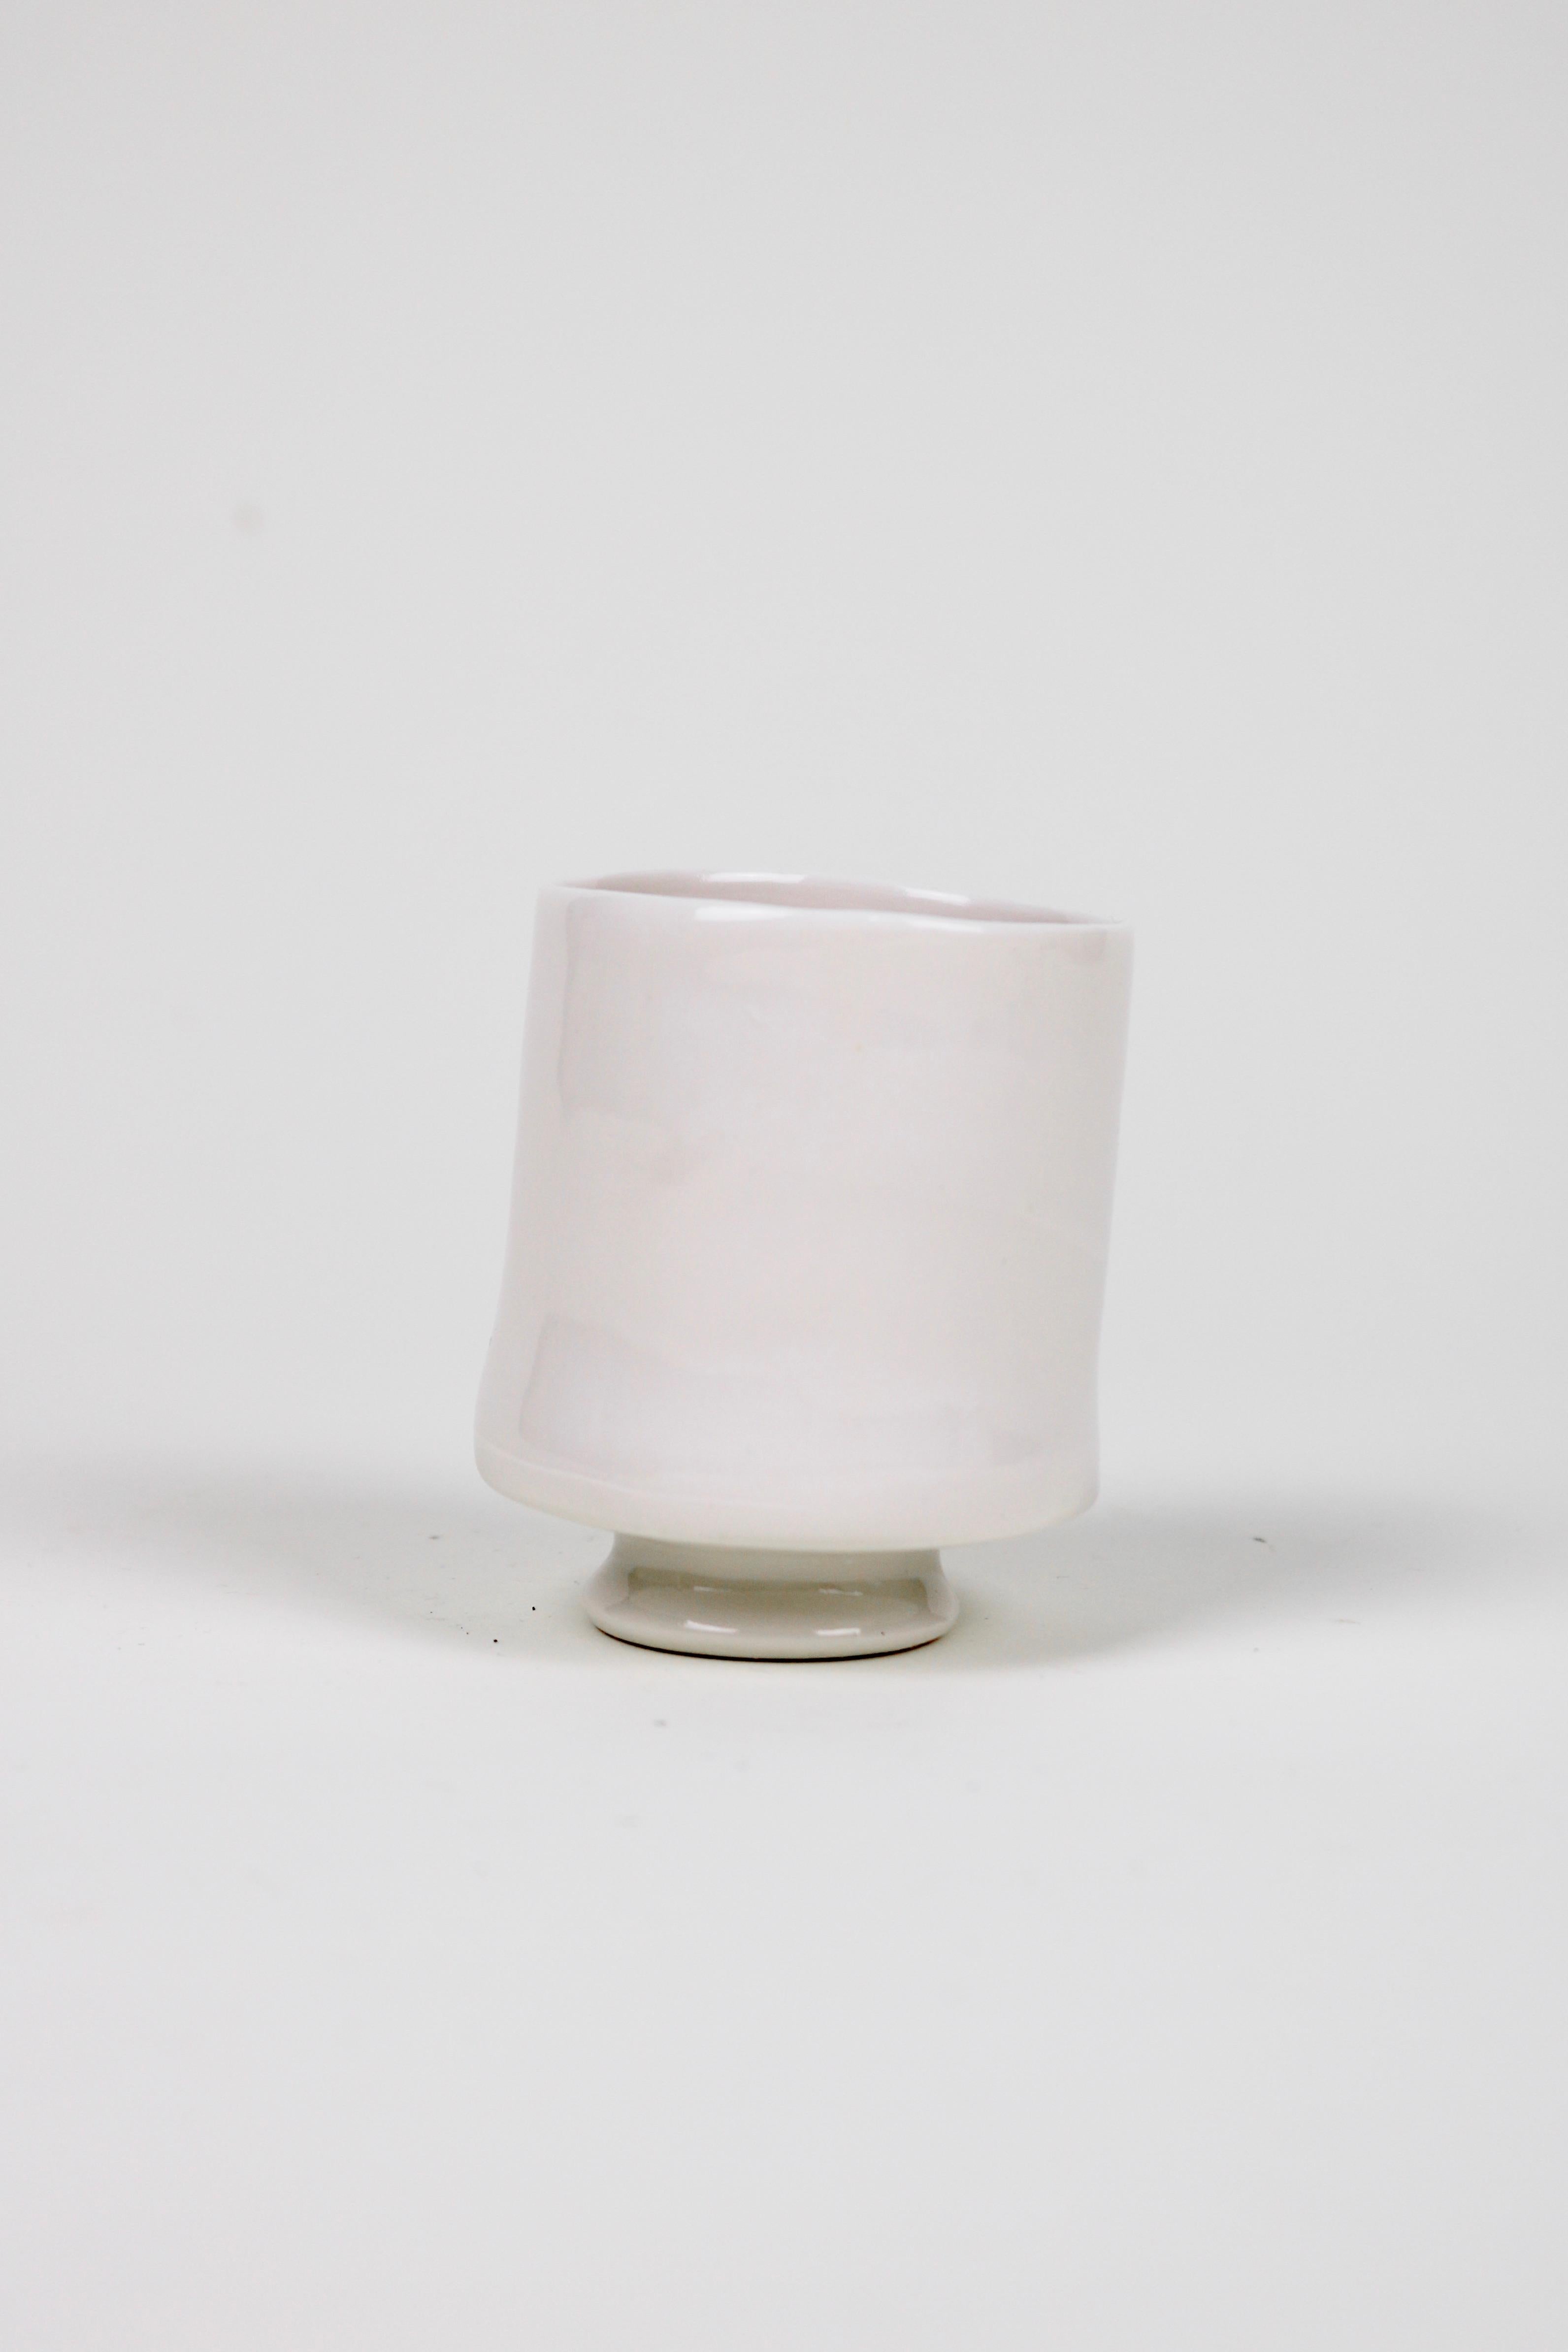 Ashley Howard Porcelain Cup Set For Sale 5